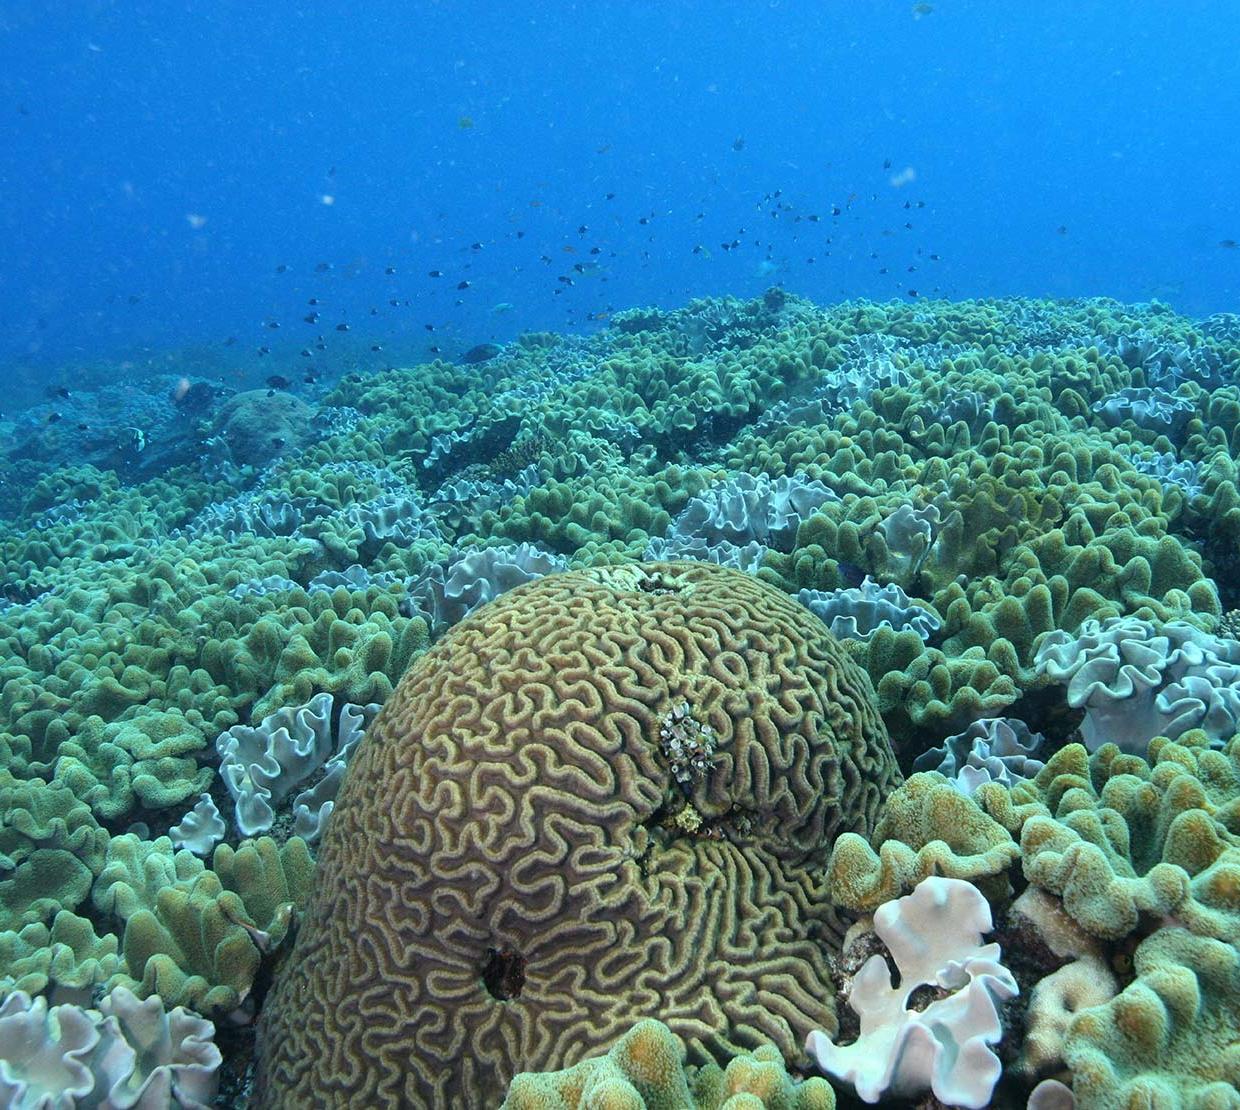 Coral in the ocean floor